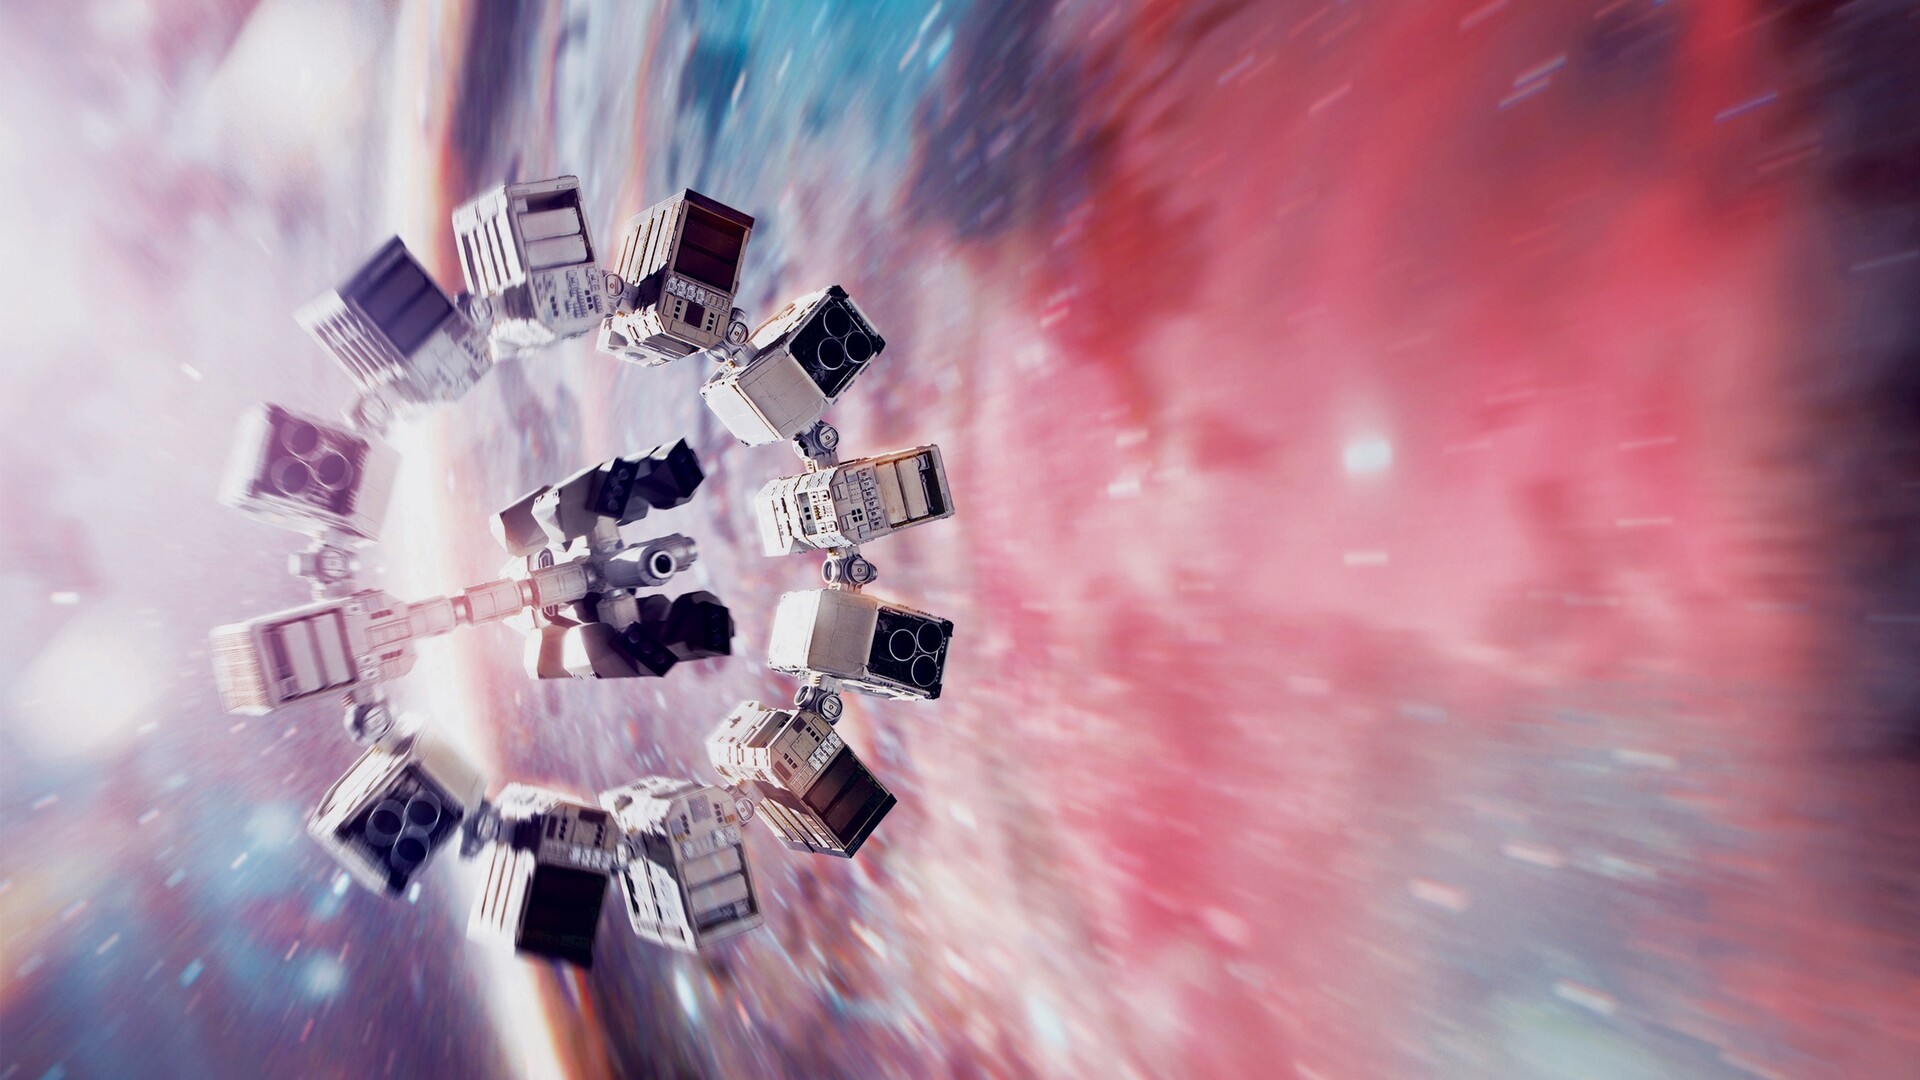 【1080p】《星际穿越》"克里斯托弗诺兰"经典科幻片重映补档壁纸